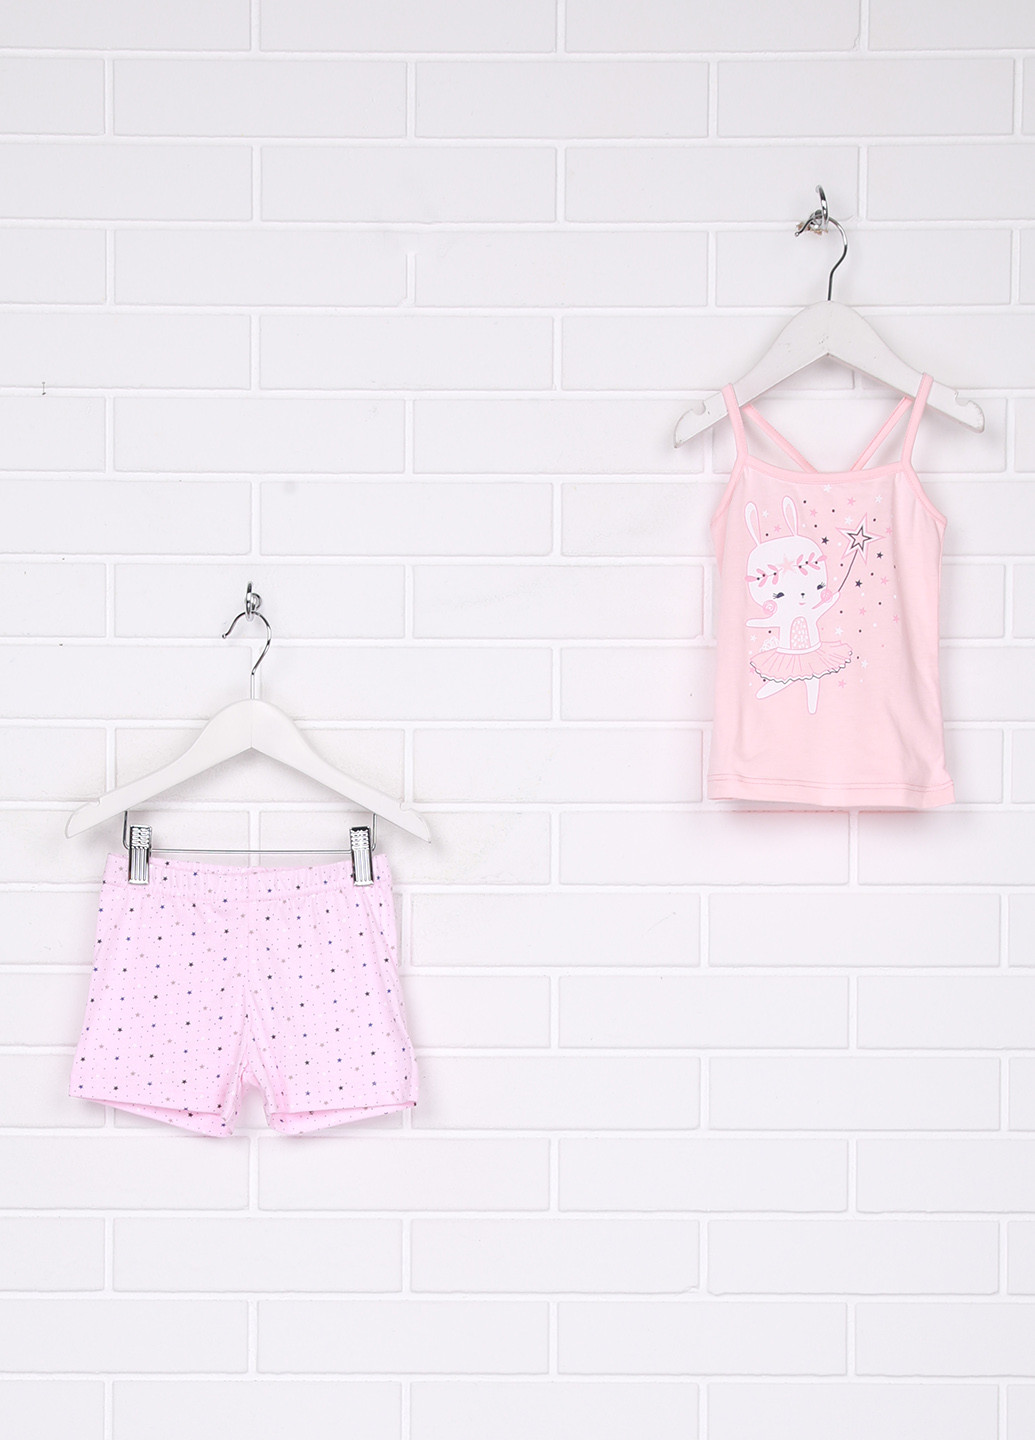 Світло-рожевий літній комплект (майка, шорты) Фабрика наш одяг